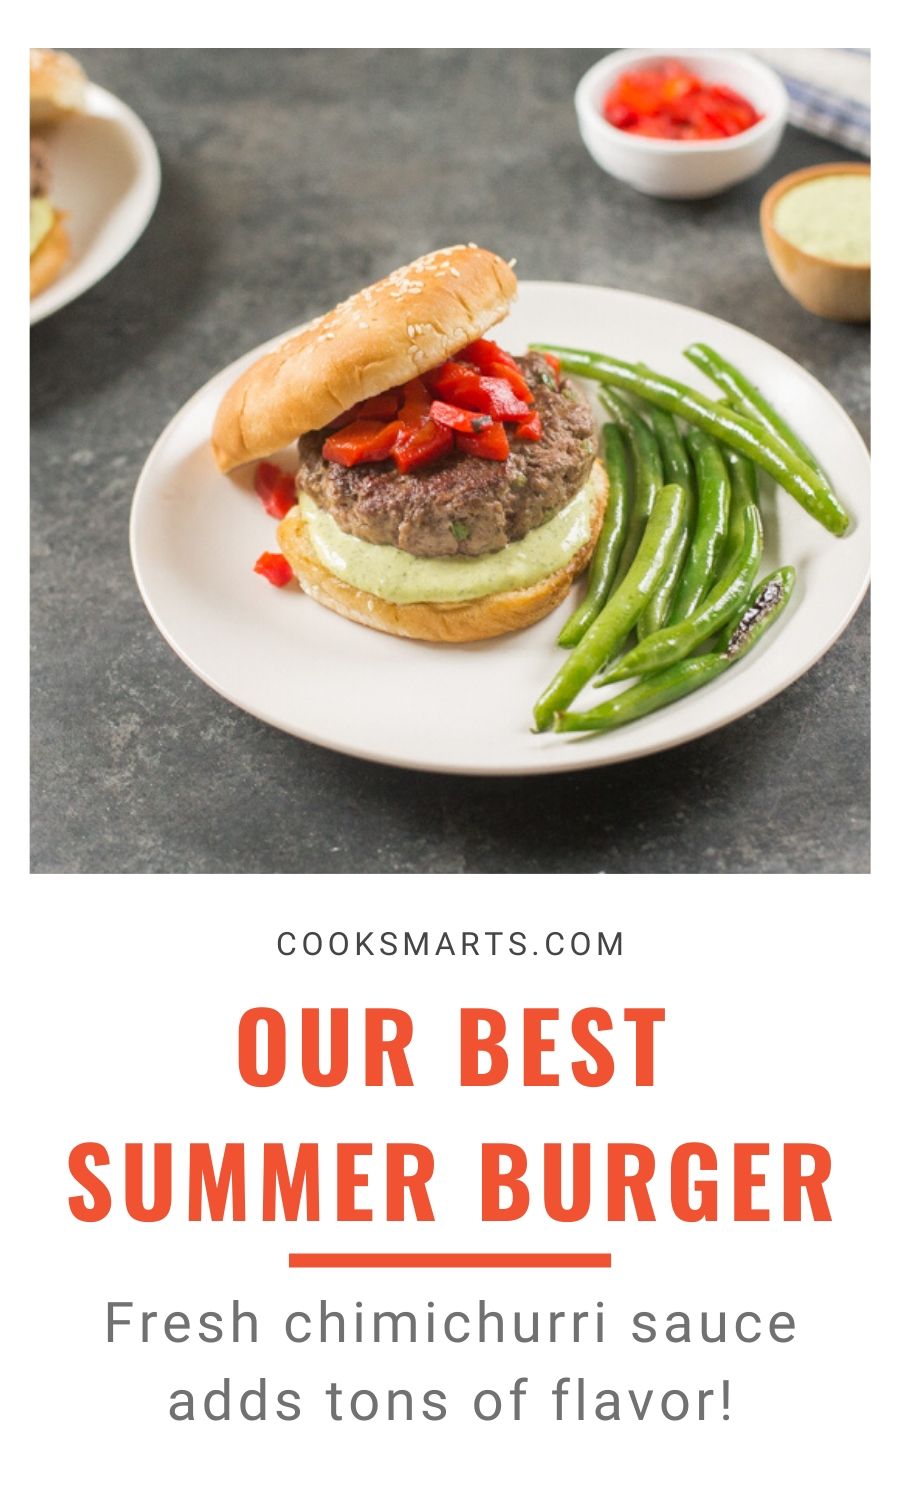 Chimichurri Burger Recipe | Cook Smarts